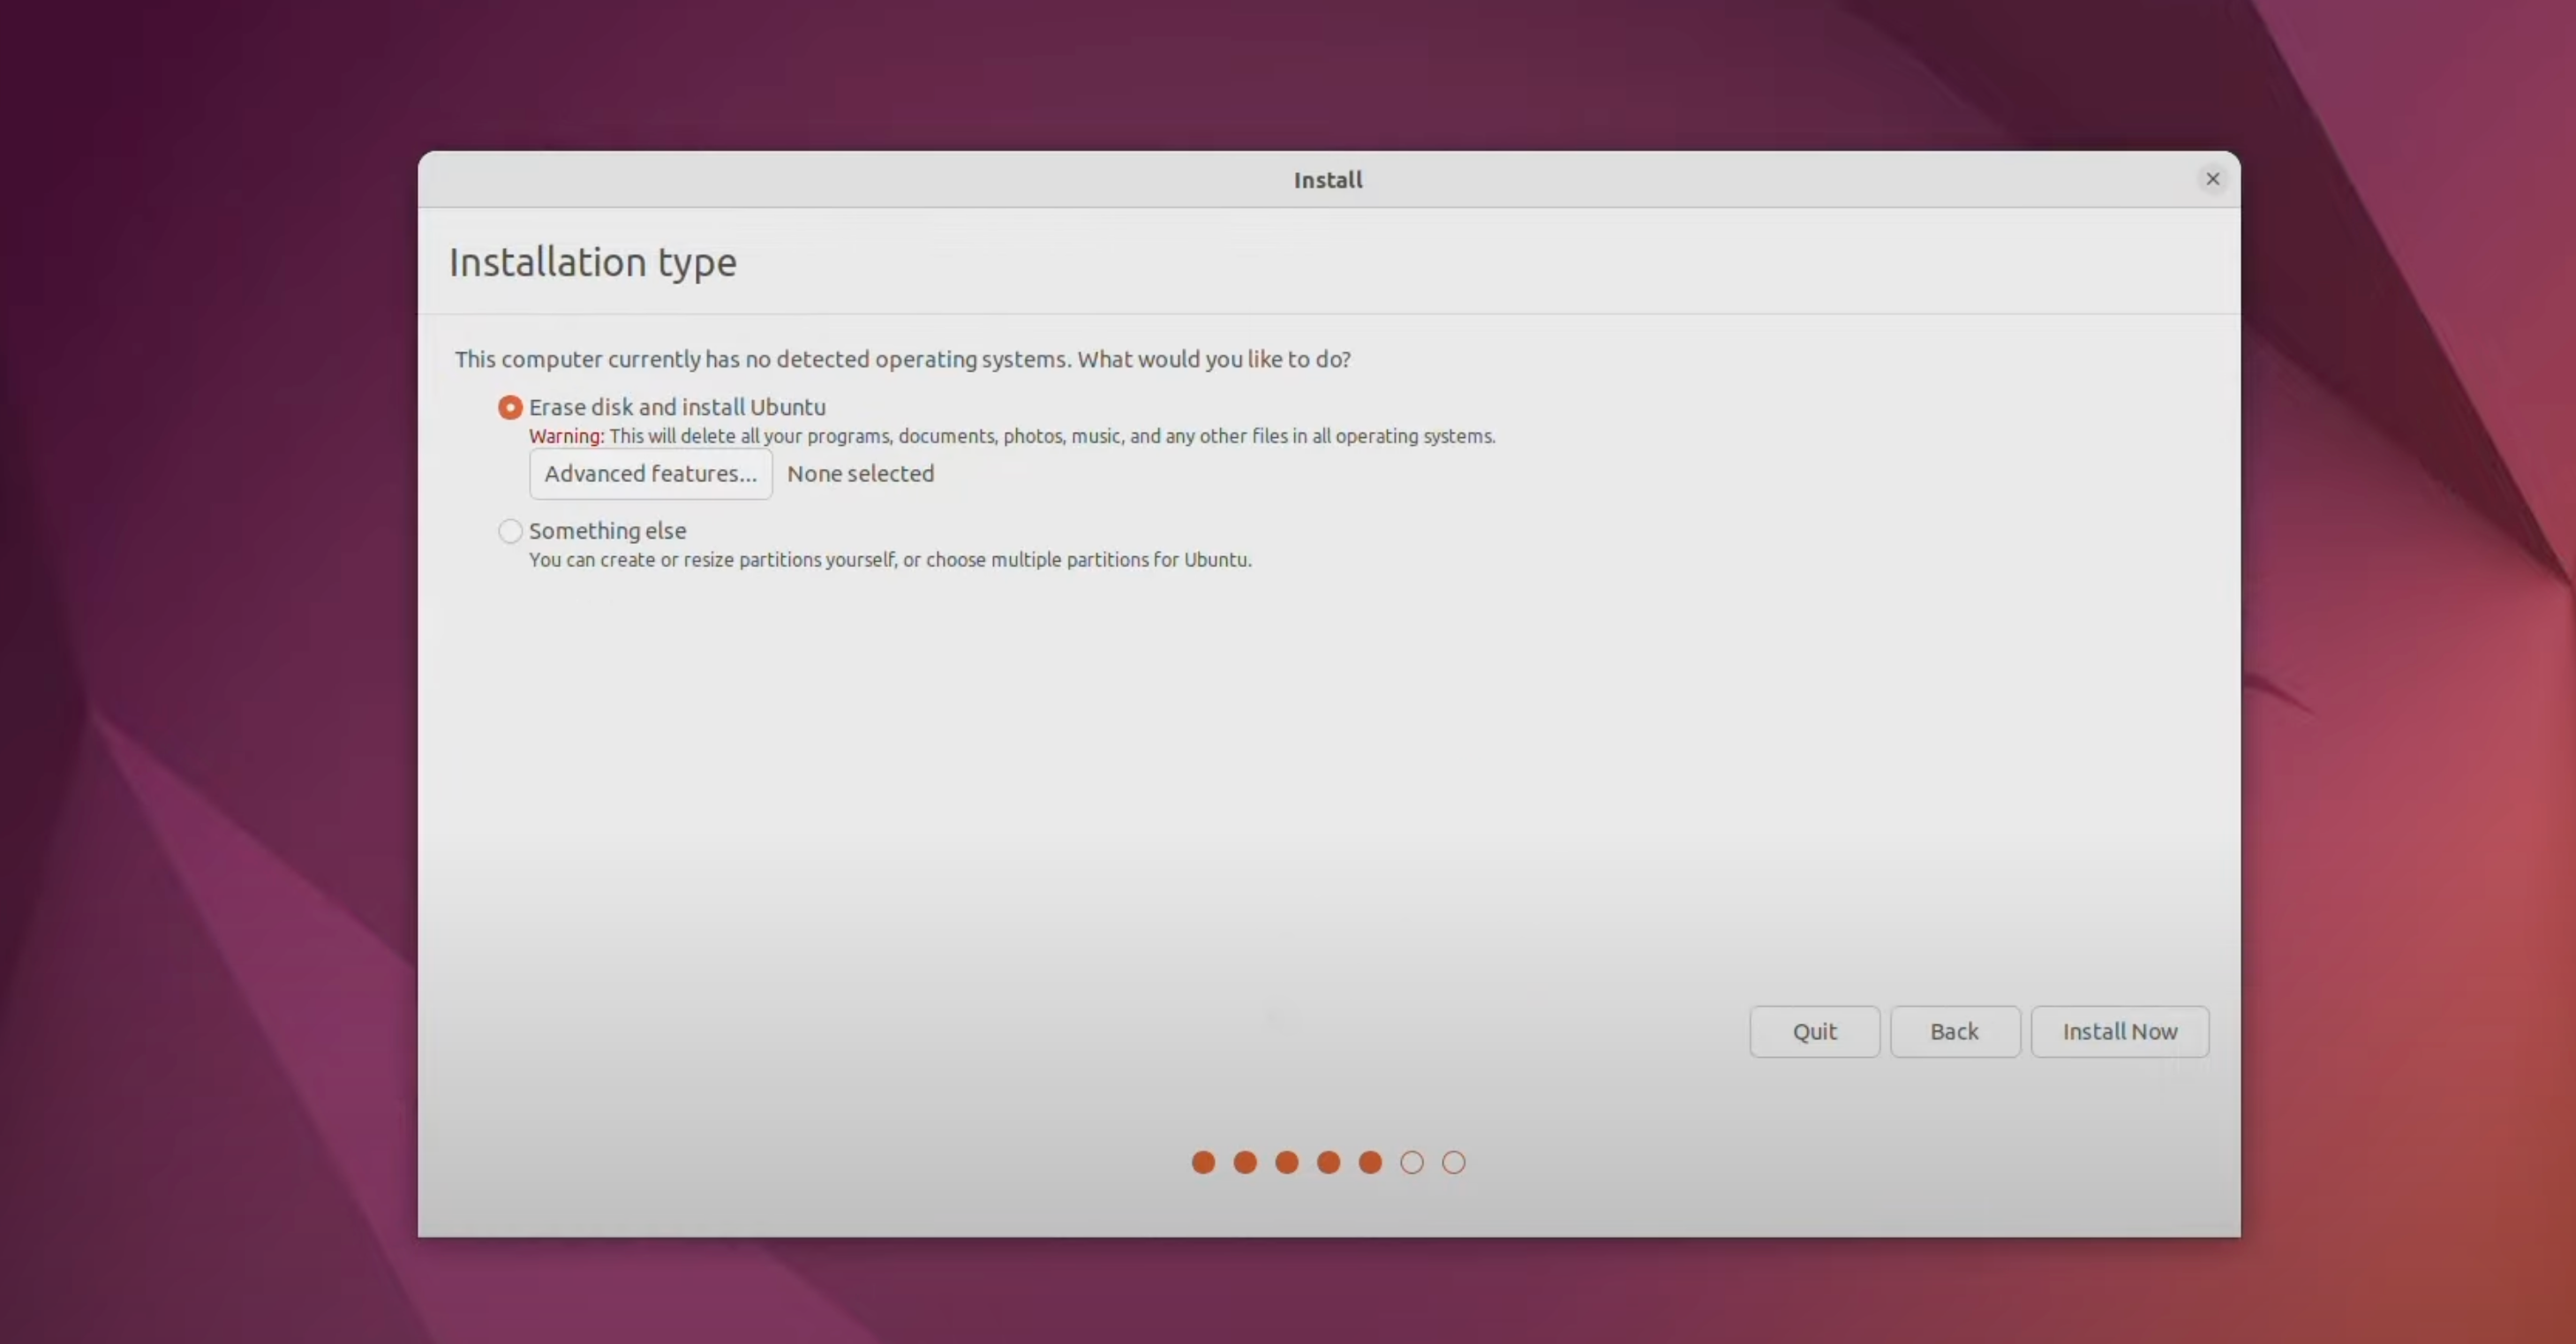 Installation type for Ubuntu